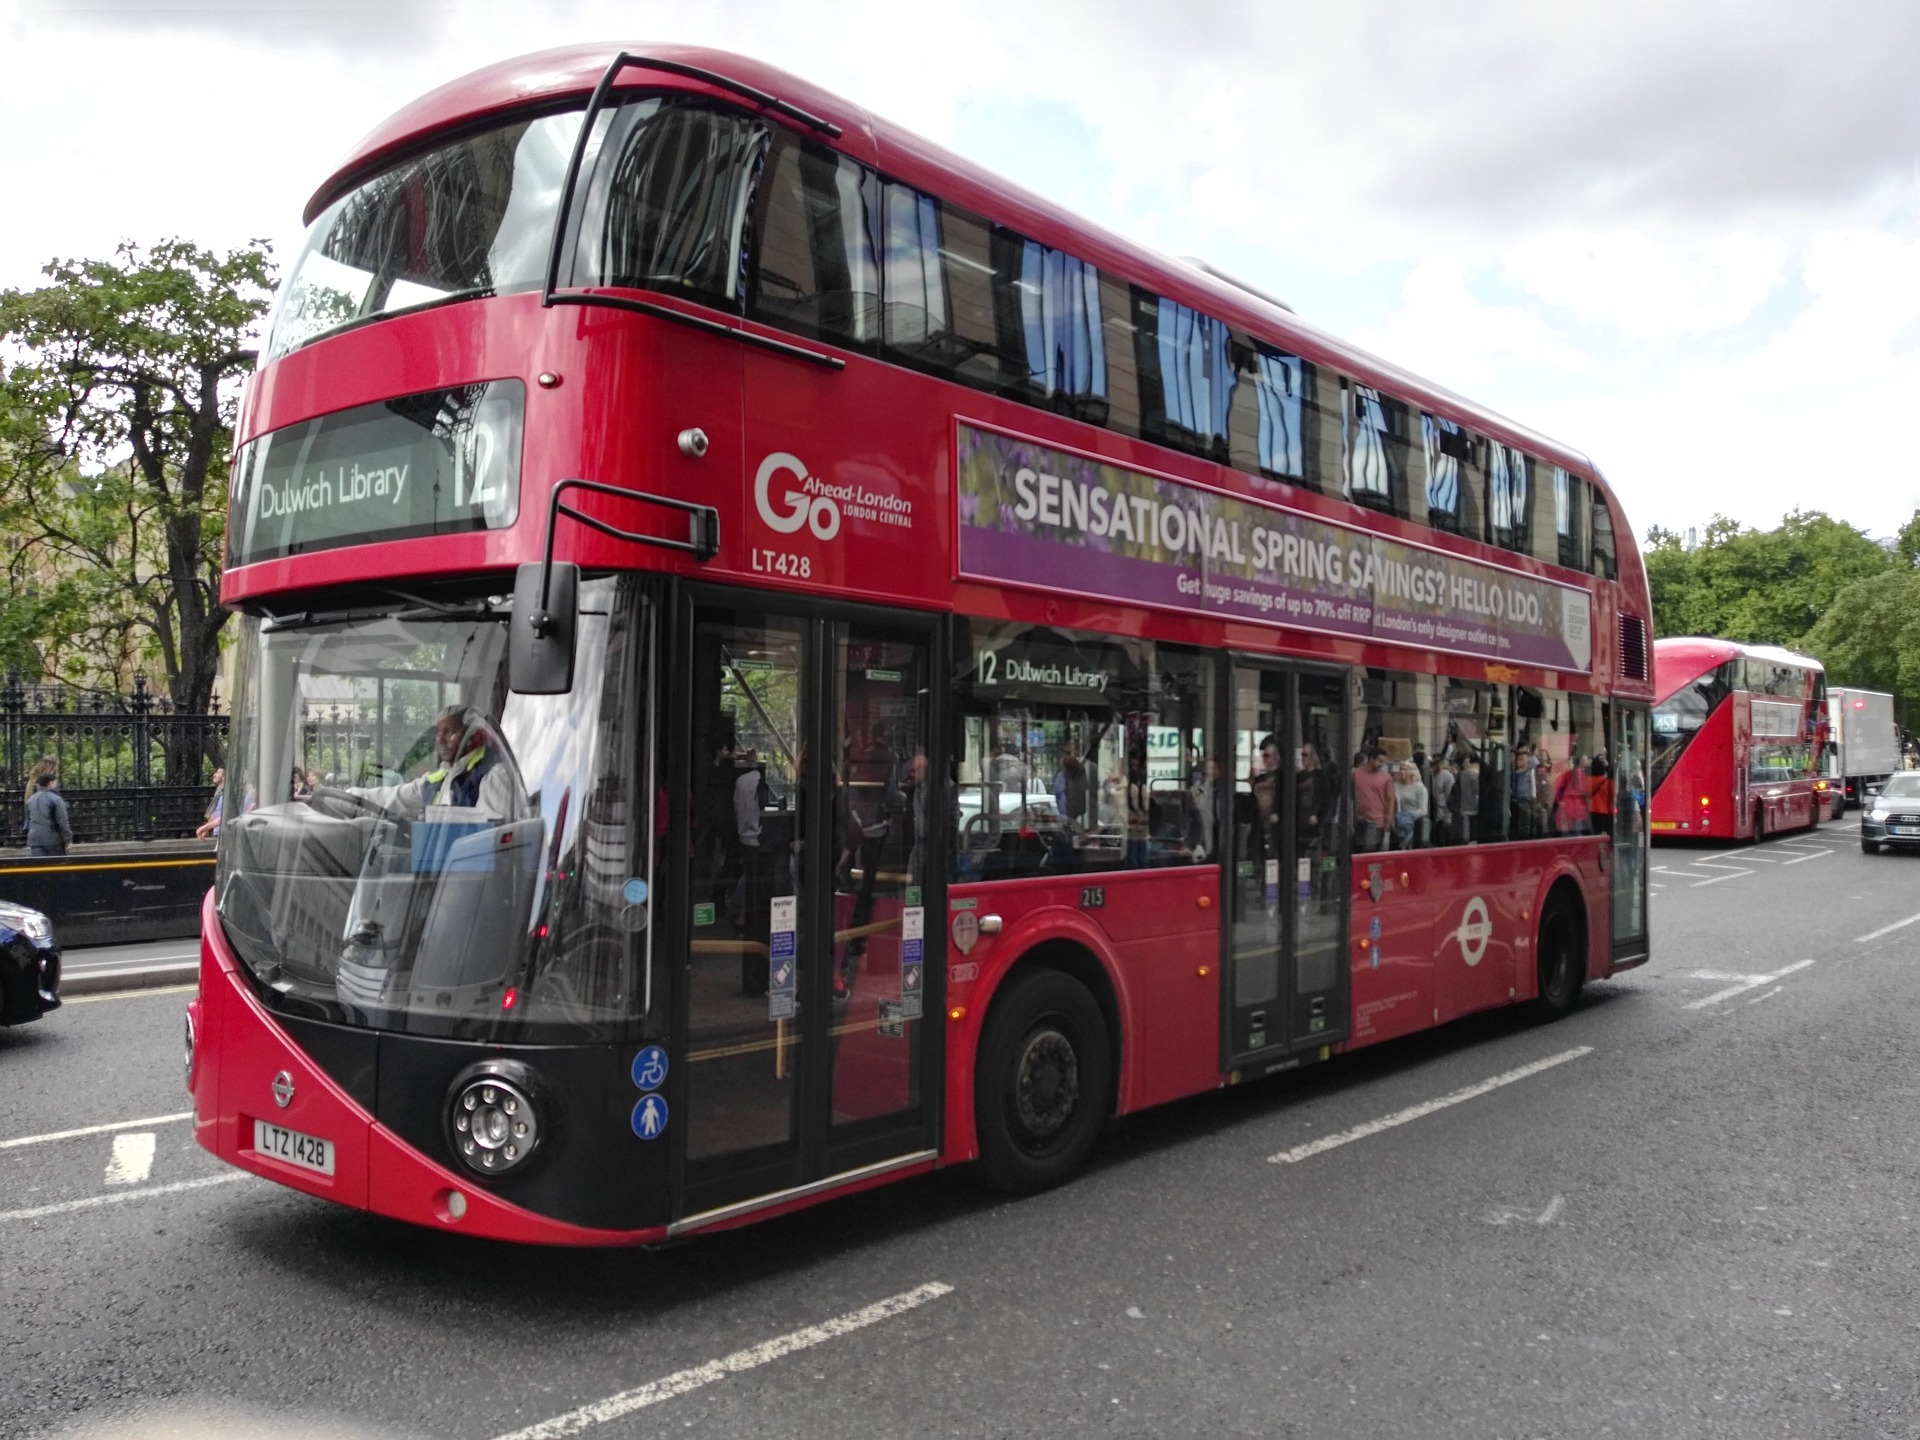 Double decker bus in London, UK